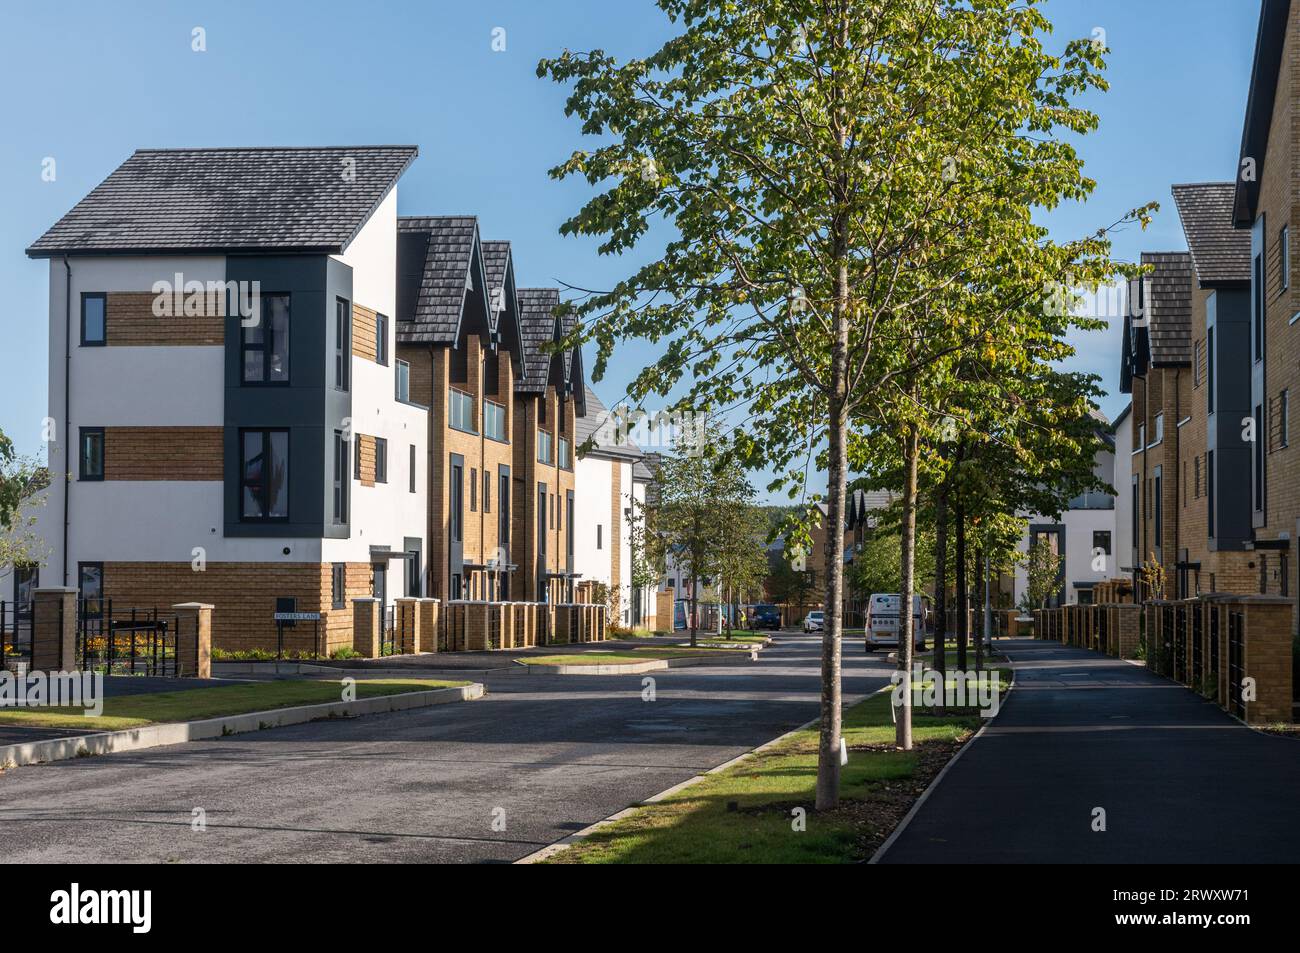 Bucklers Park, développement de logements neufs à Crowthorne, Berkshire, Angleterre, Royaume-Uni. Nouvelle mini ville Banque D'Images